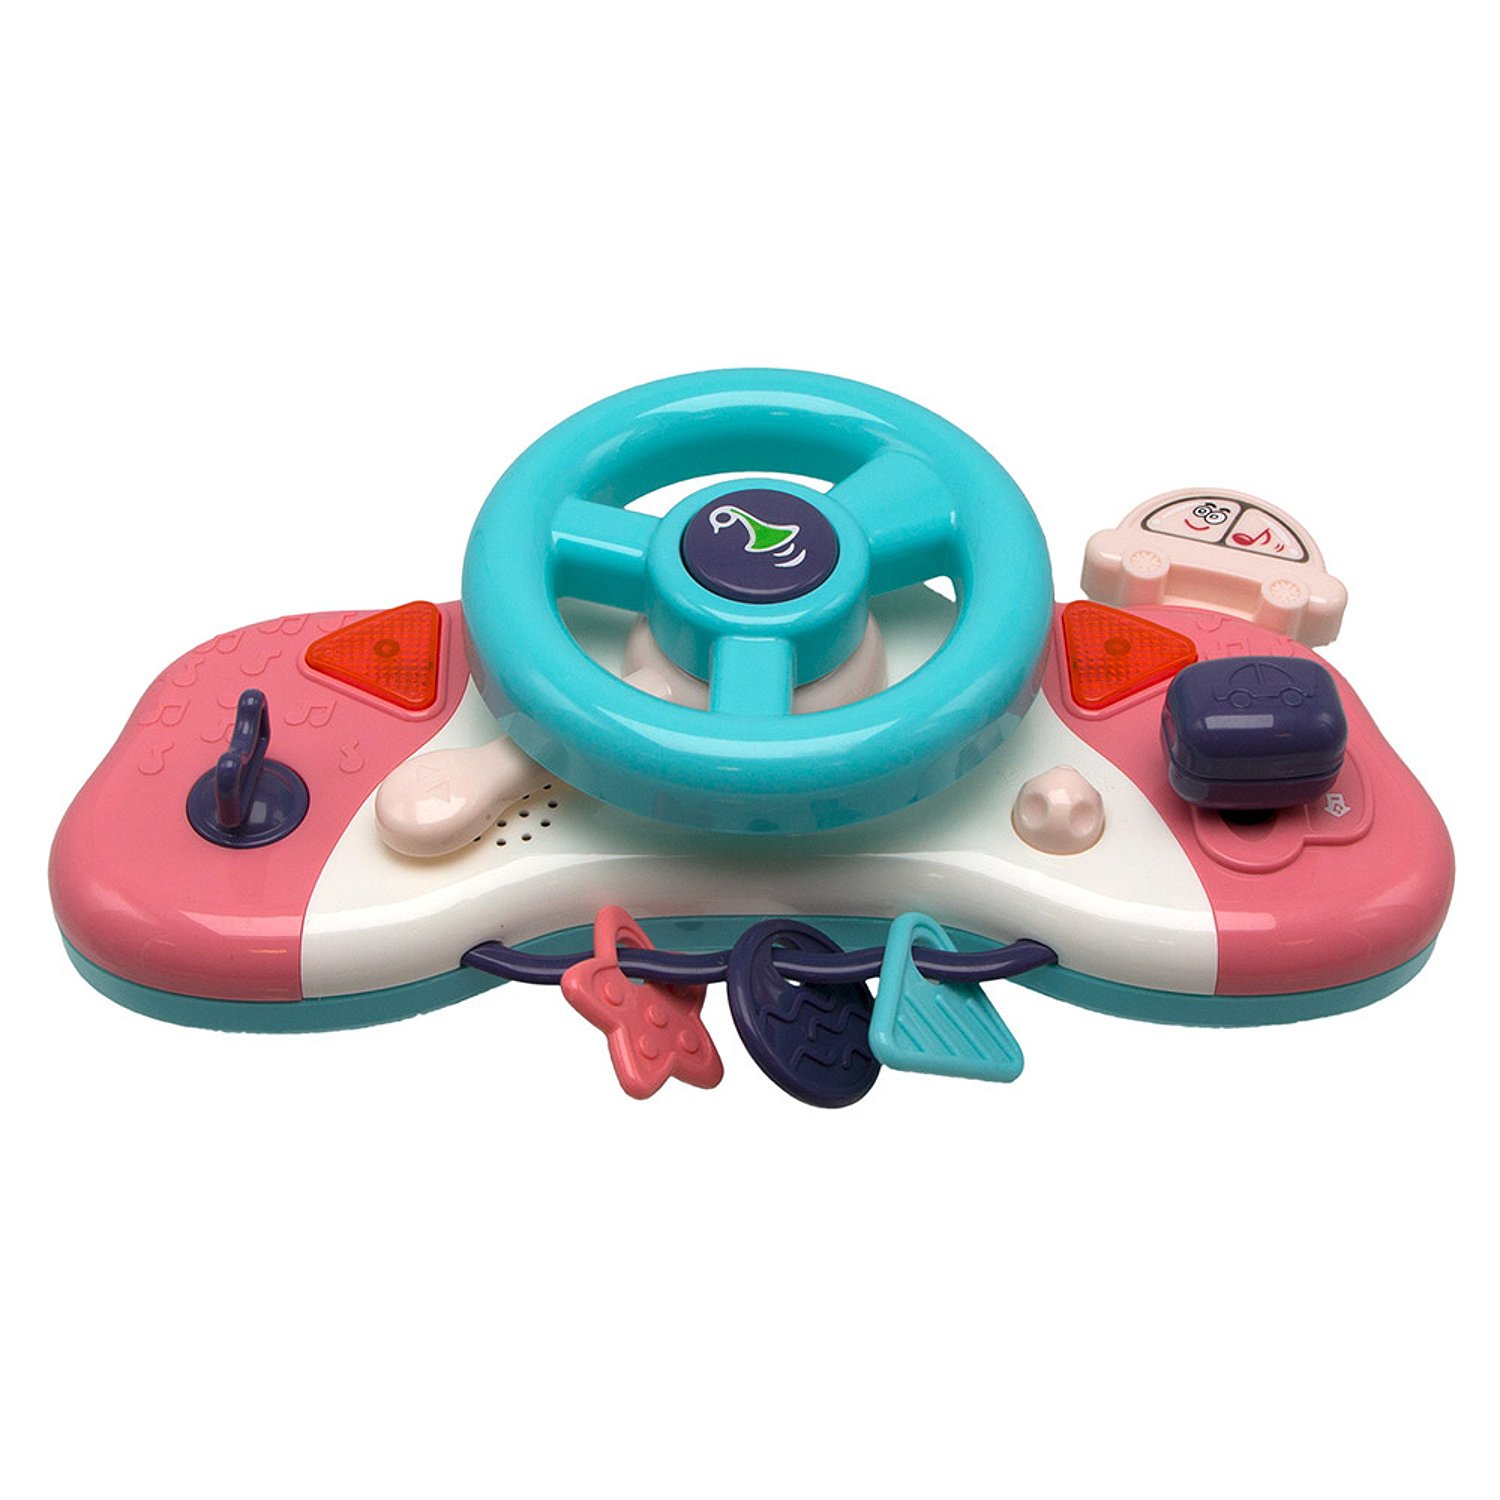 Интерактивная игрушка Bambini Музыкальный руль 100022